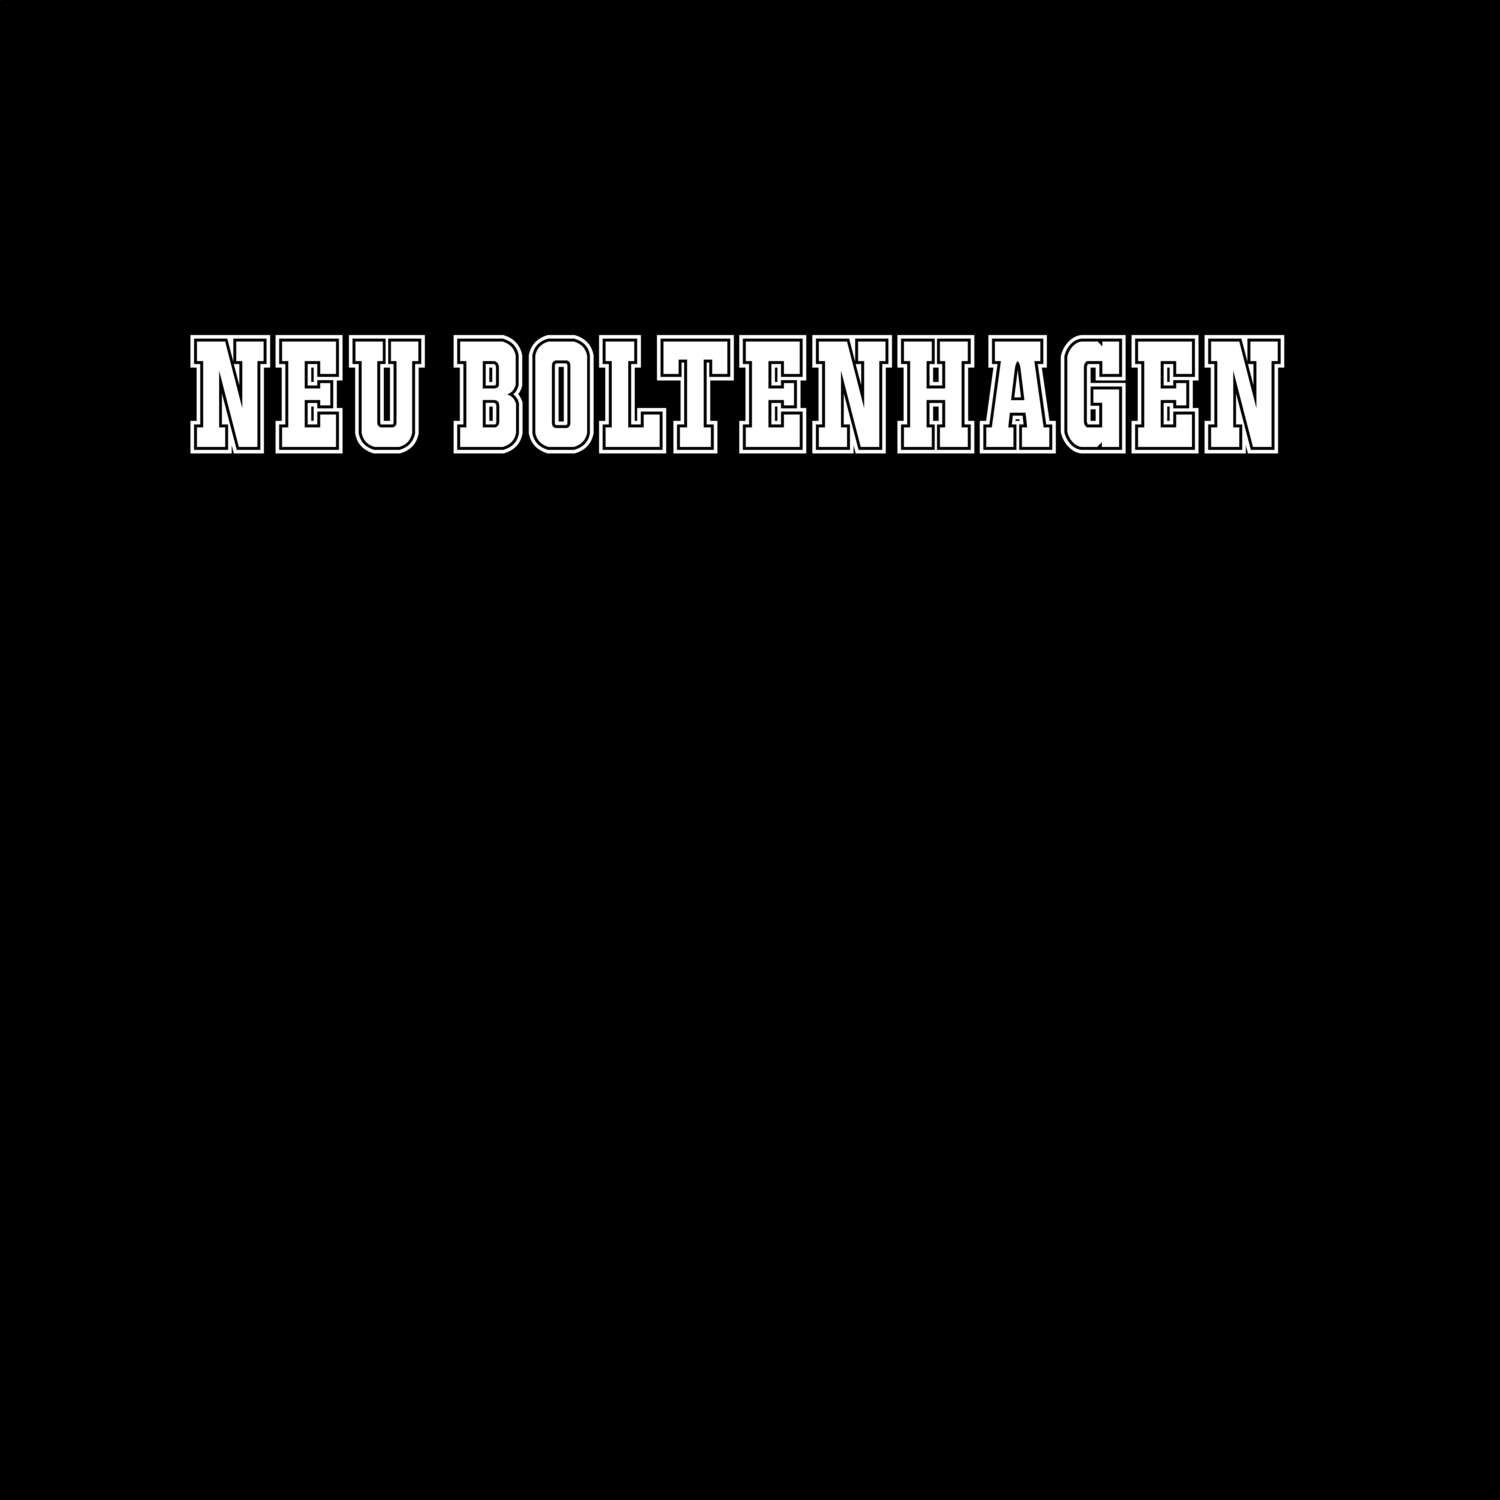 Neu Boltenhagen T-Shirt »Classic«